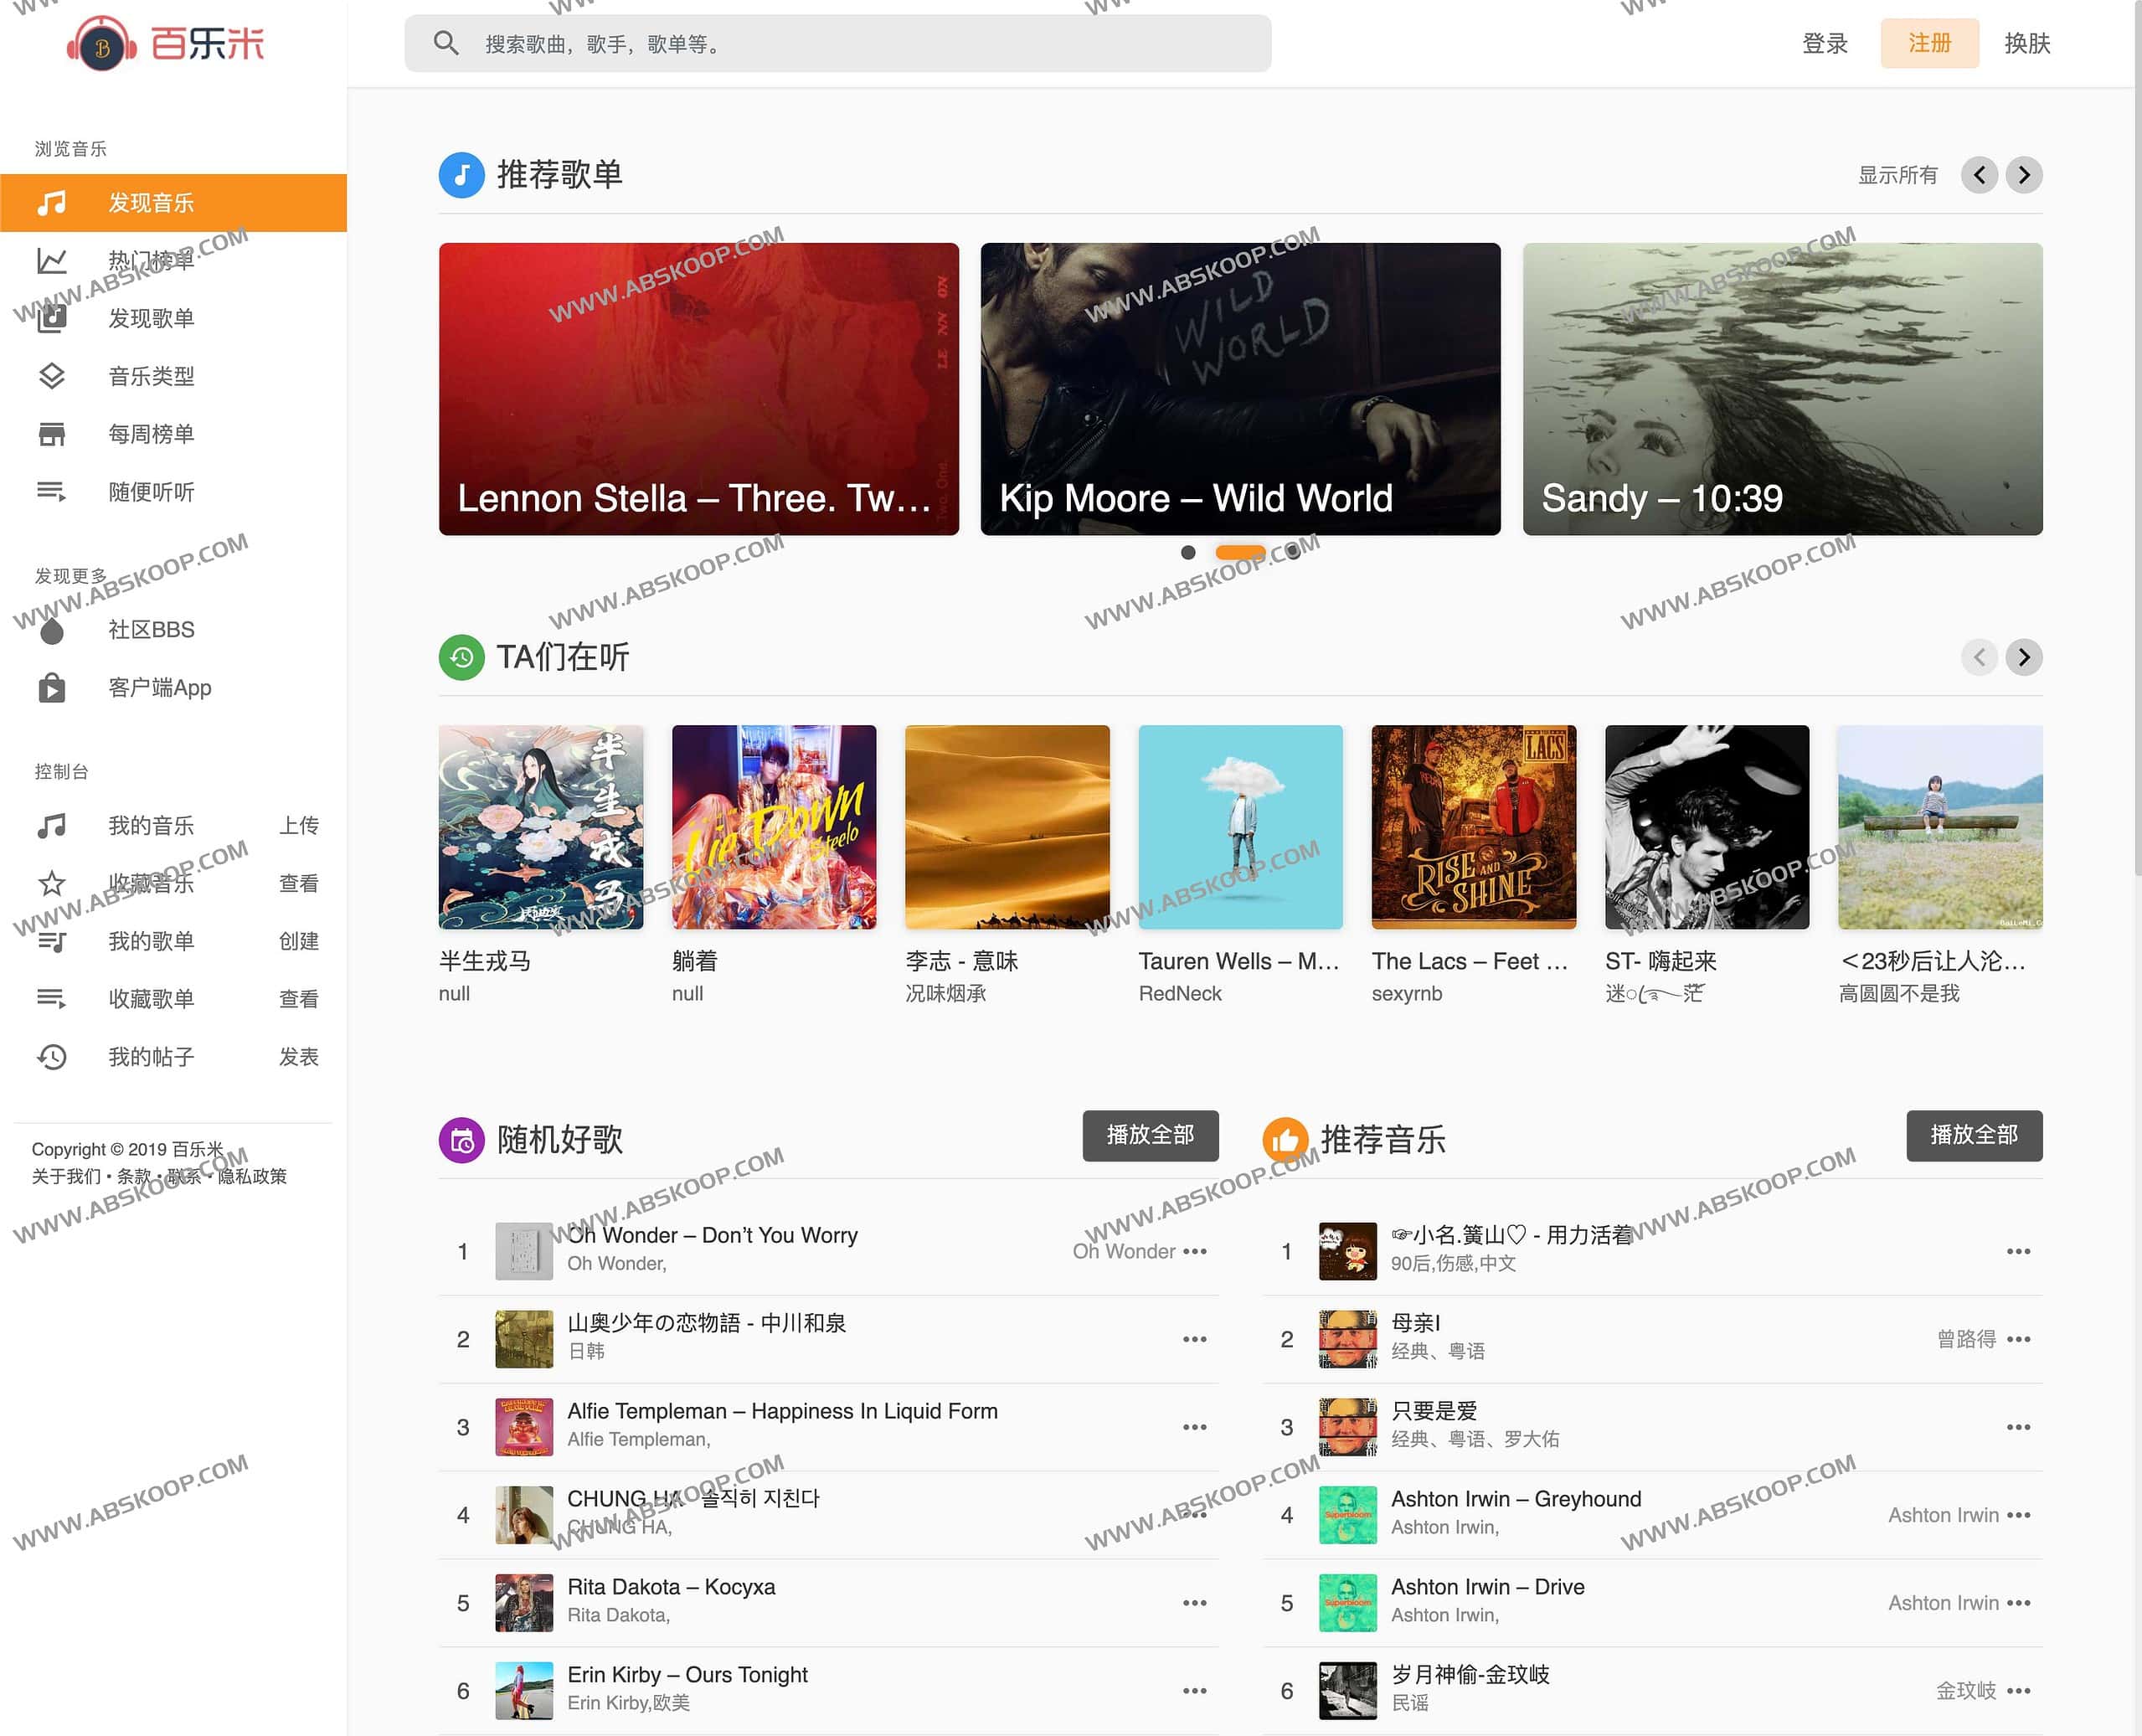 百乐米-在线音乐播放平台 专注于分享好听稀有音乐